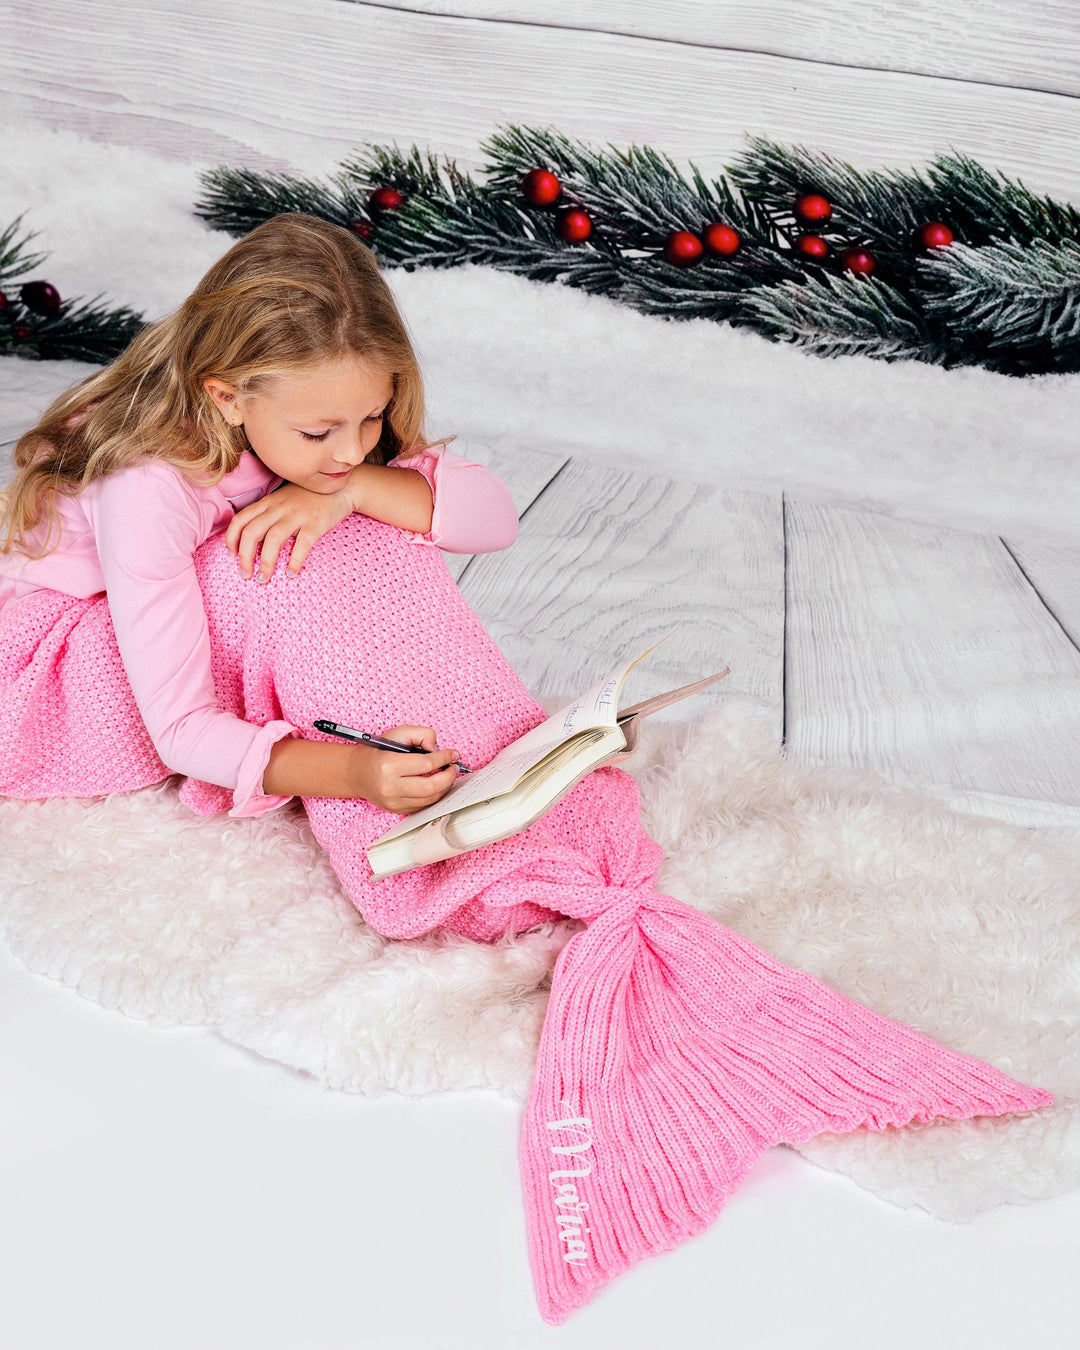 Kids Mermaid Tail Blanket - Kids clothes